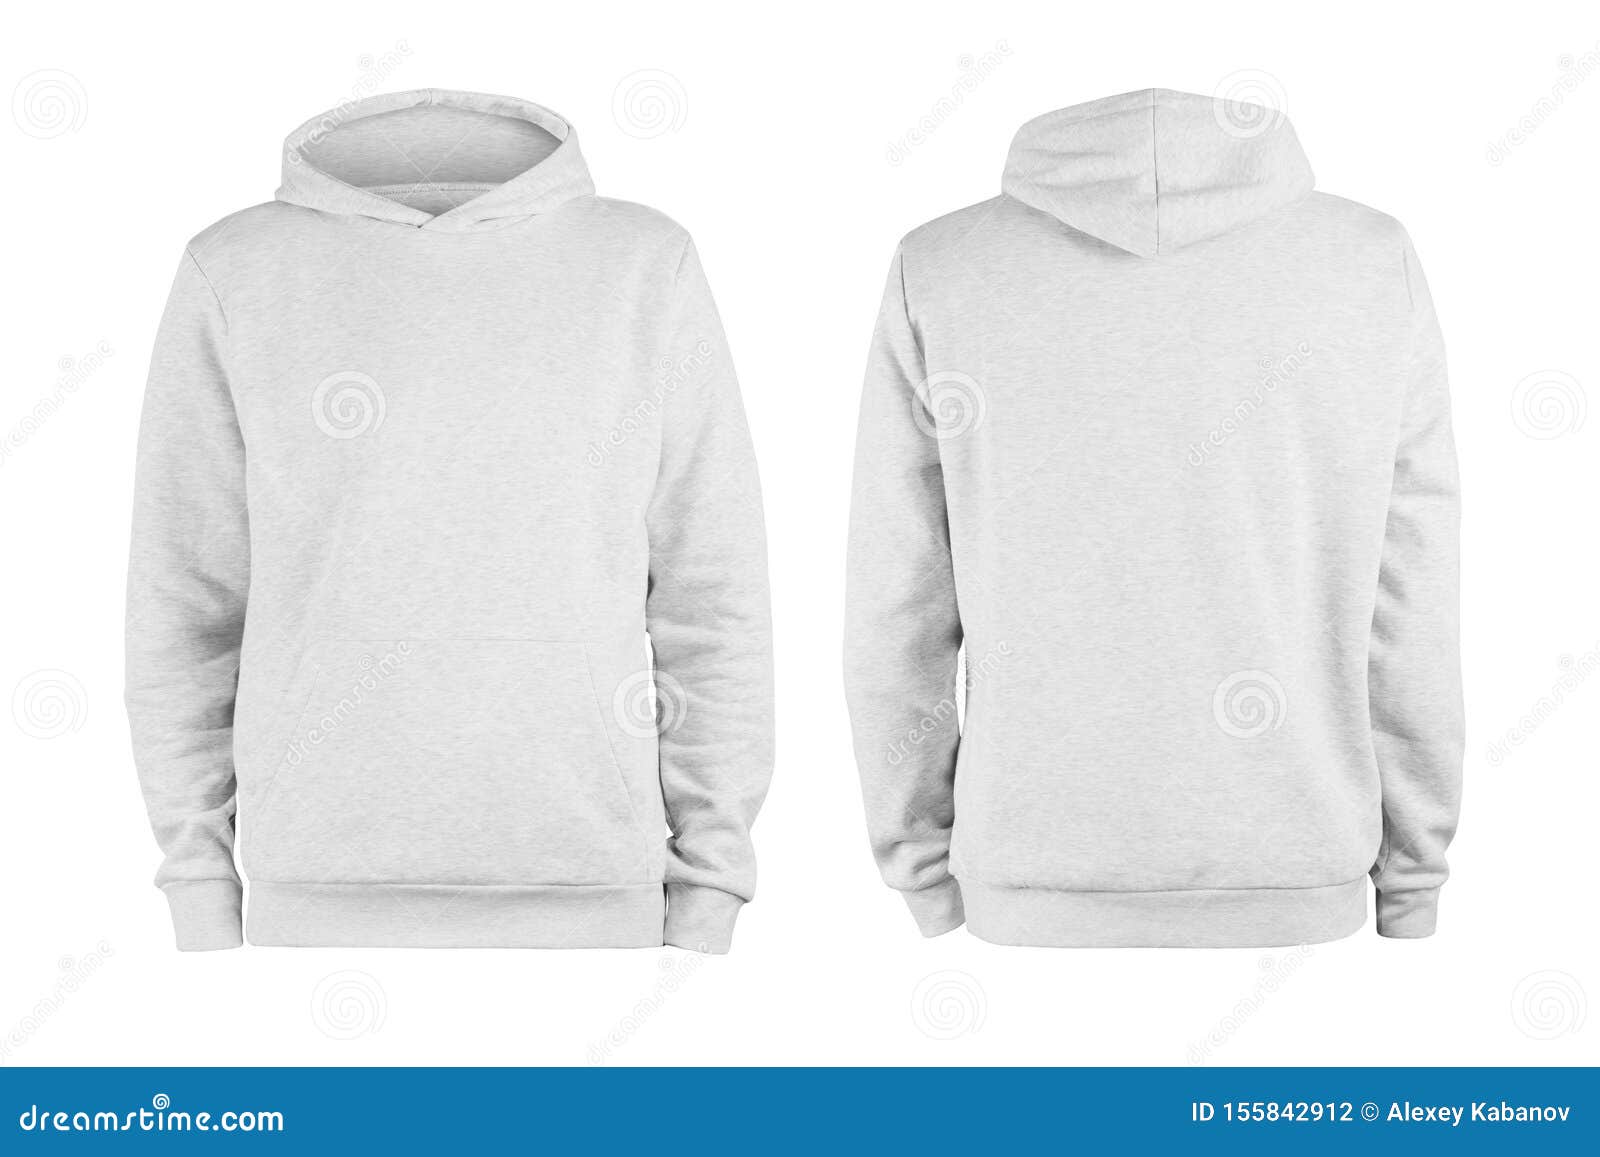 plain hoodie template